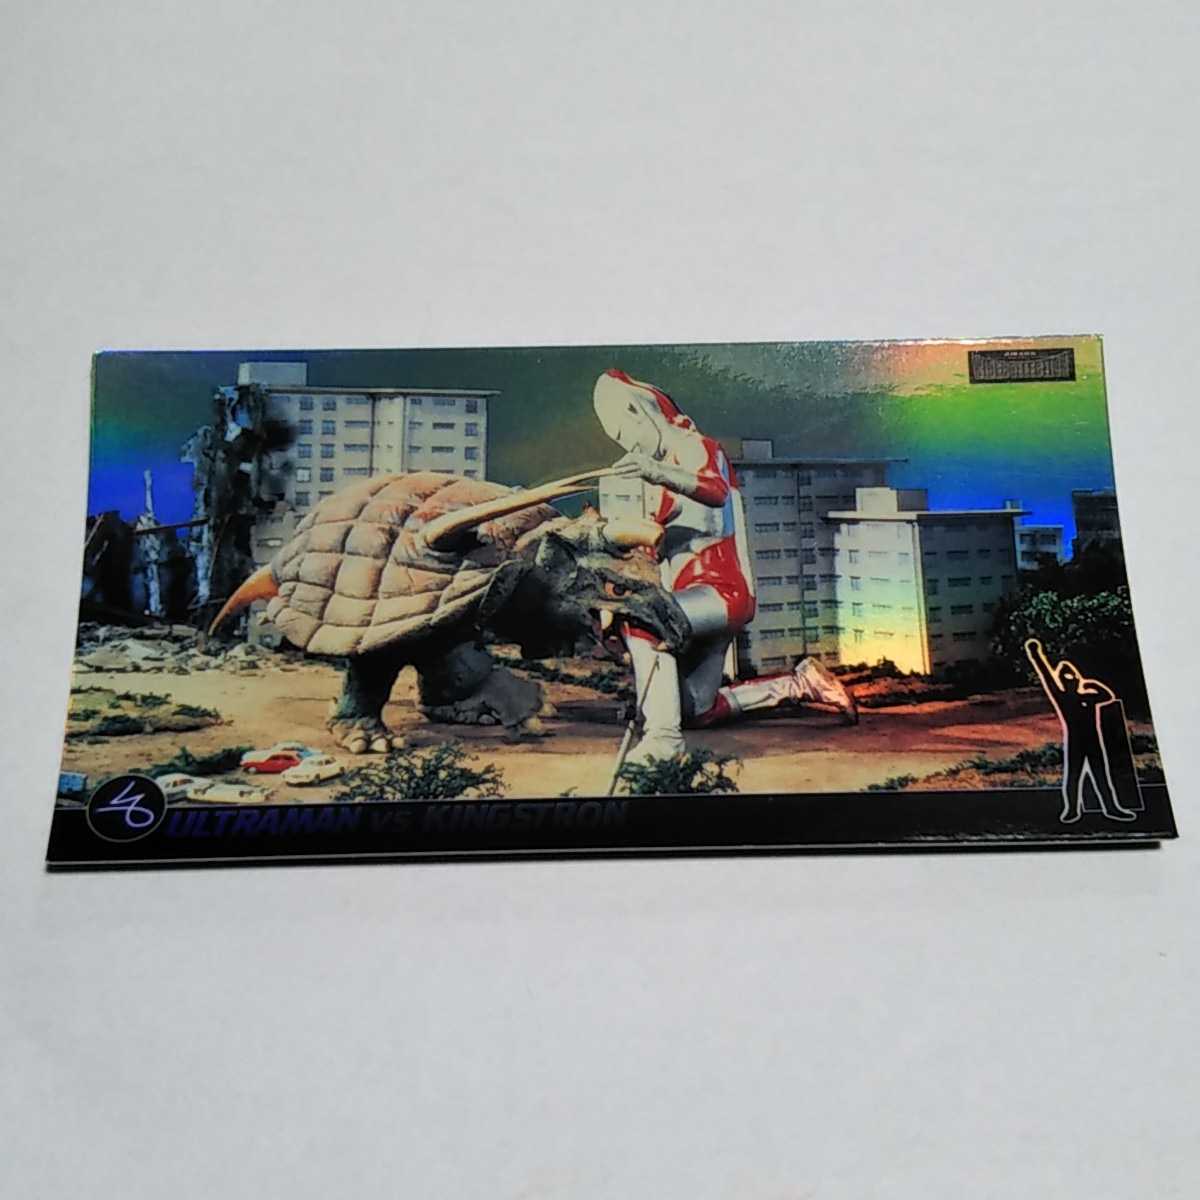 アマダ 1996 空想特撮シリーズ ワイドコレクション 帰ってきたウルトラマンvsキングストロン レーザーカード No.005の画像1